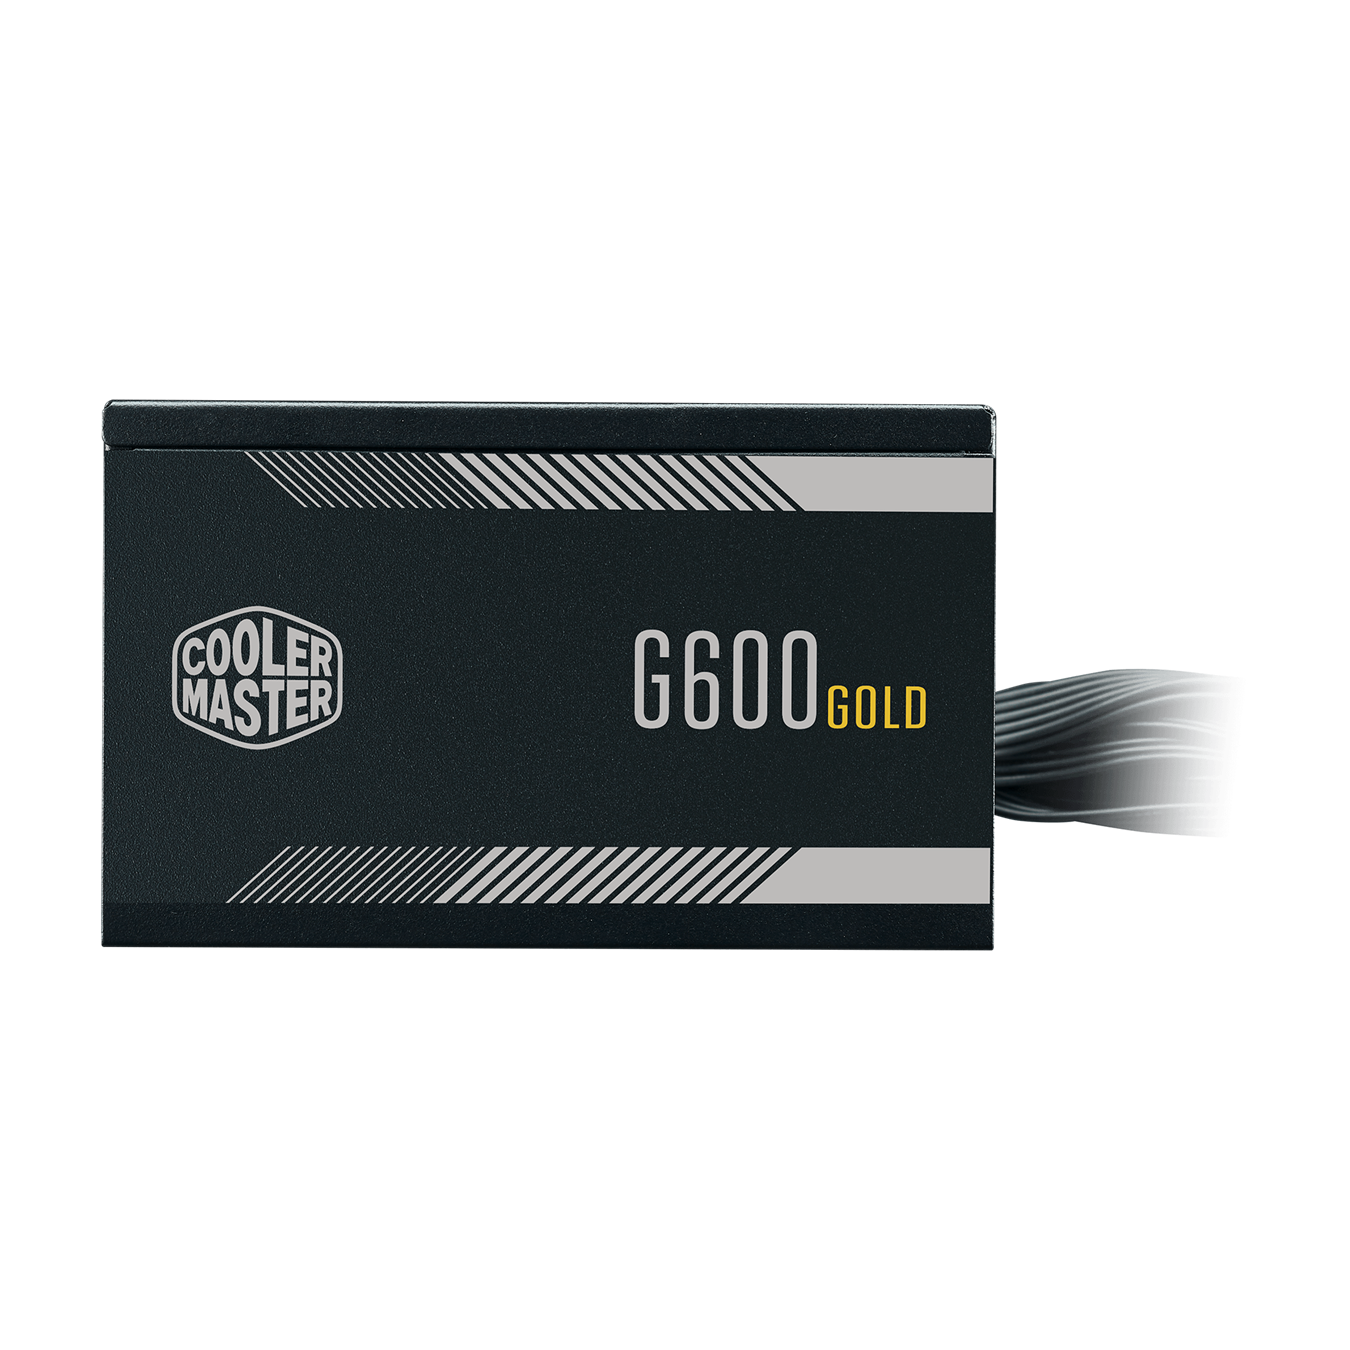 تصویر جلو منبع تغذیه کامپیوتر کولر مستر مدل G600 Gold توان ۶۰۰ وات